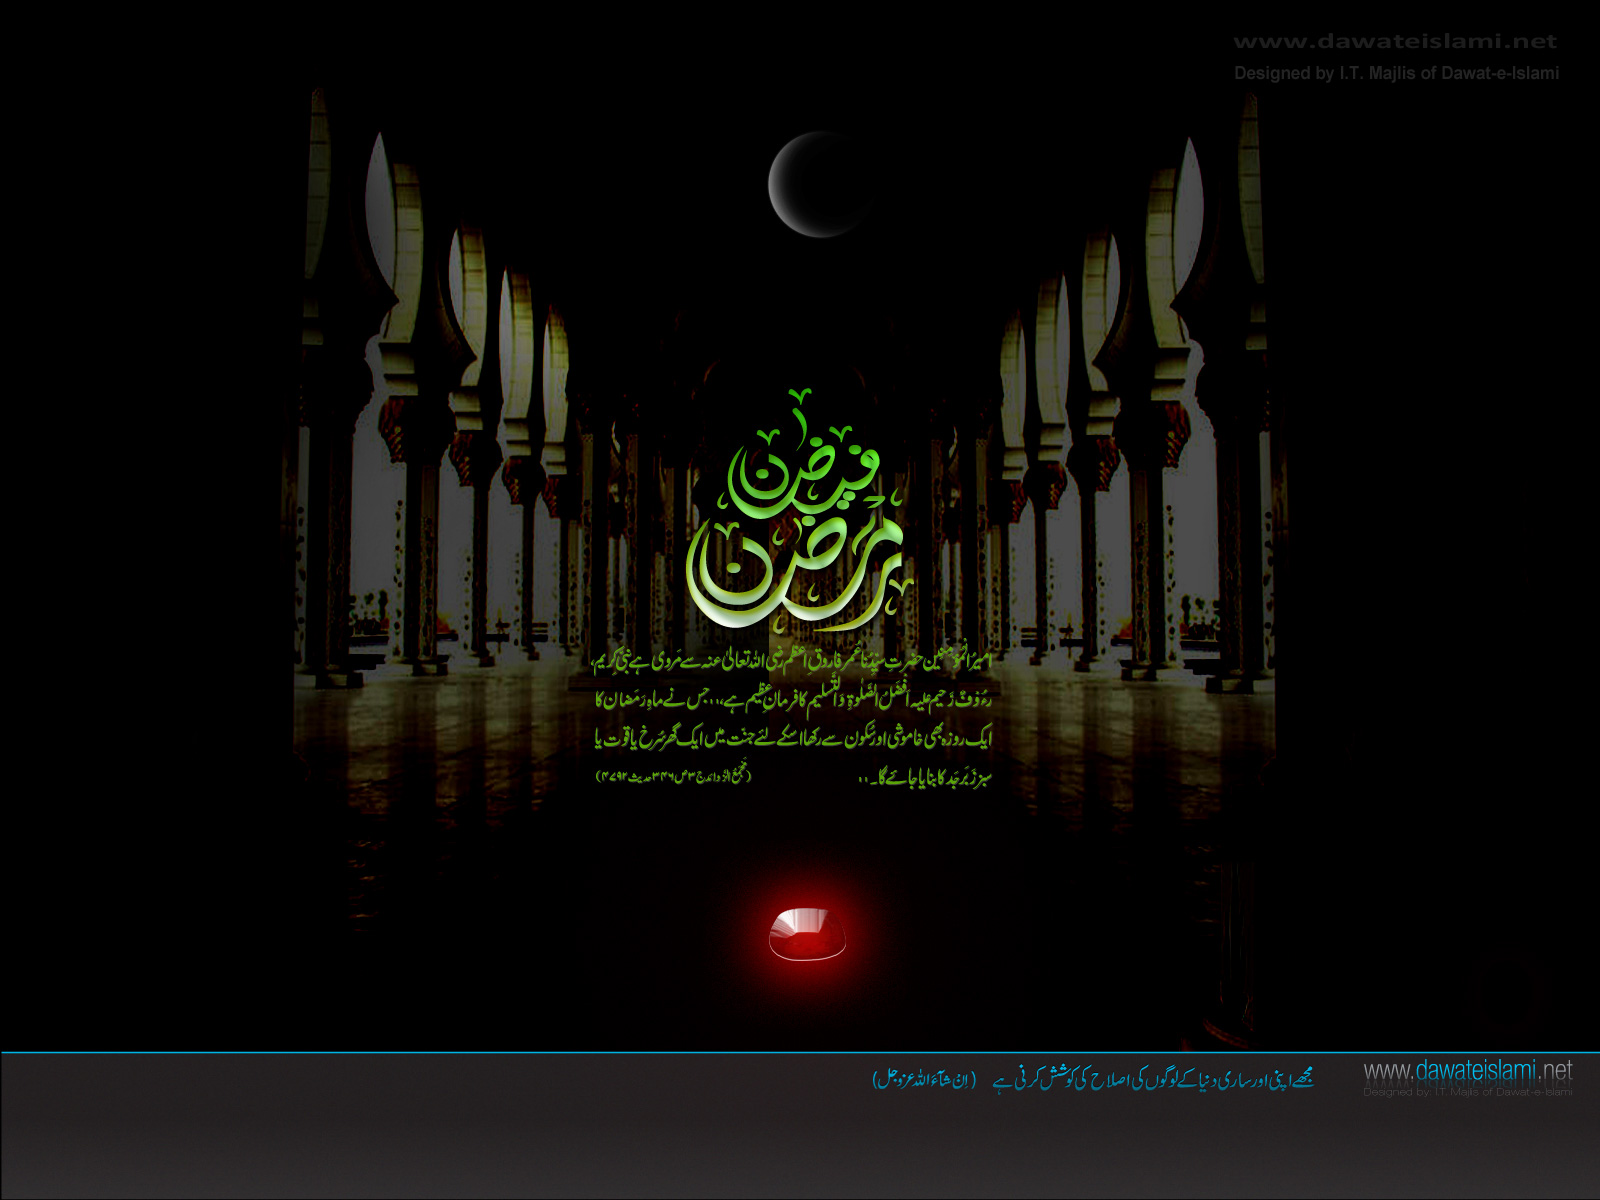 papel tapiz de ramadán de alta calidad,texto,diseño gráfico,ligero,oscuridad,fuente